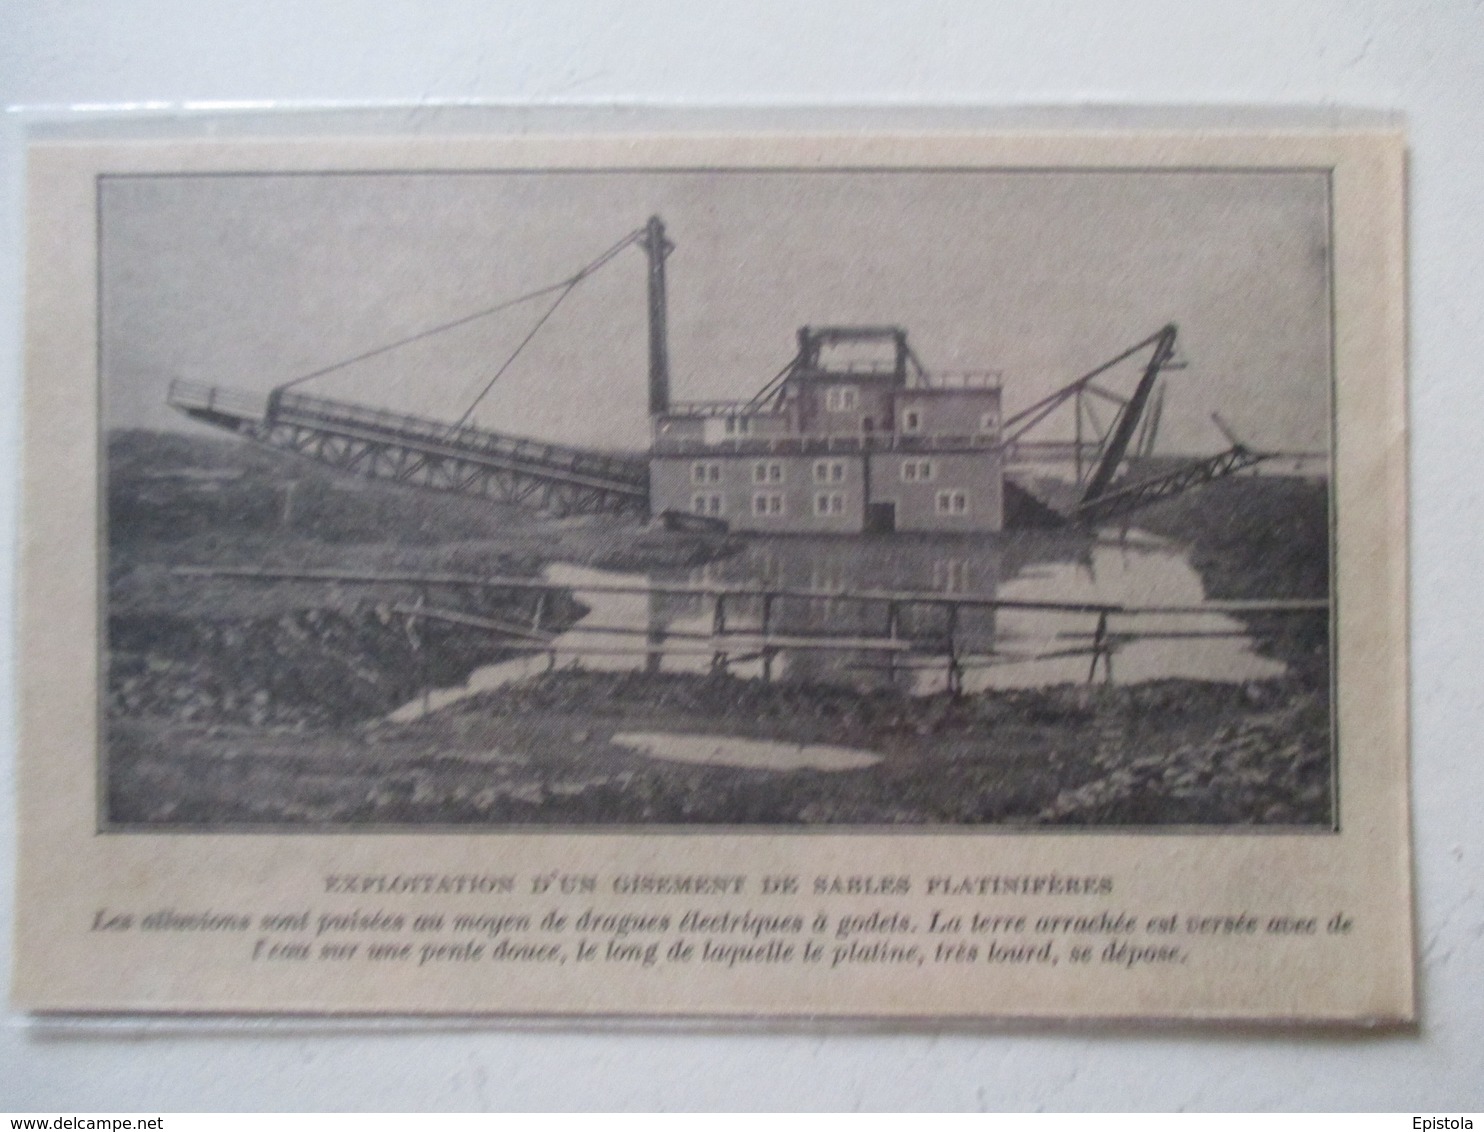 Sverdlovsk (en Russie) Свердло́вская  -   Drageuse électrique à Godets  -  Coupure De Presse De 1928 - Andere Geräte